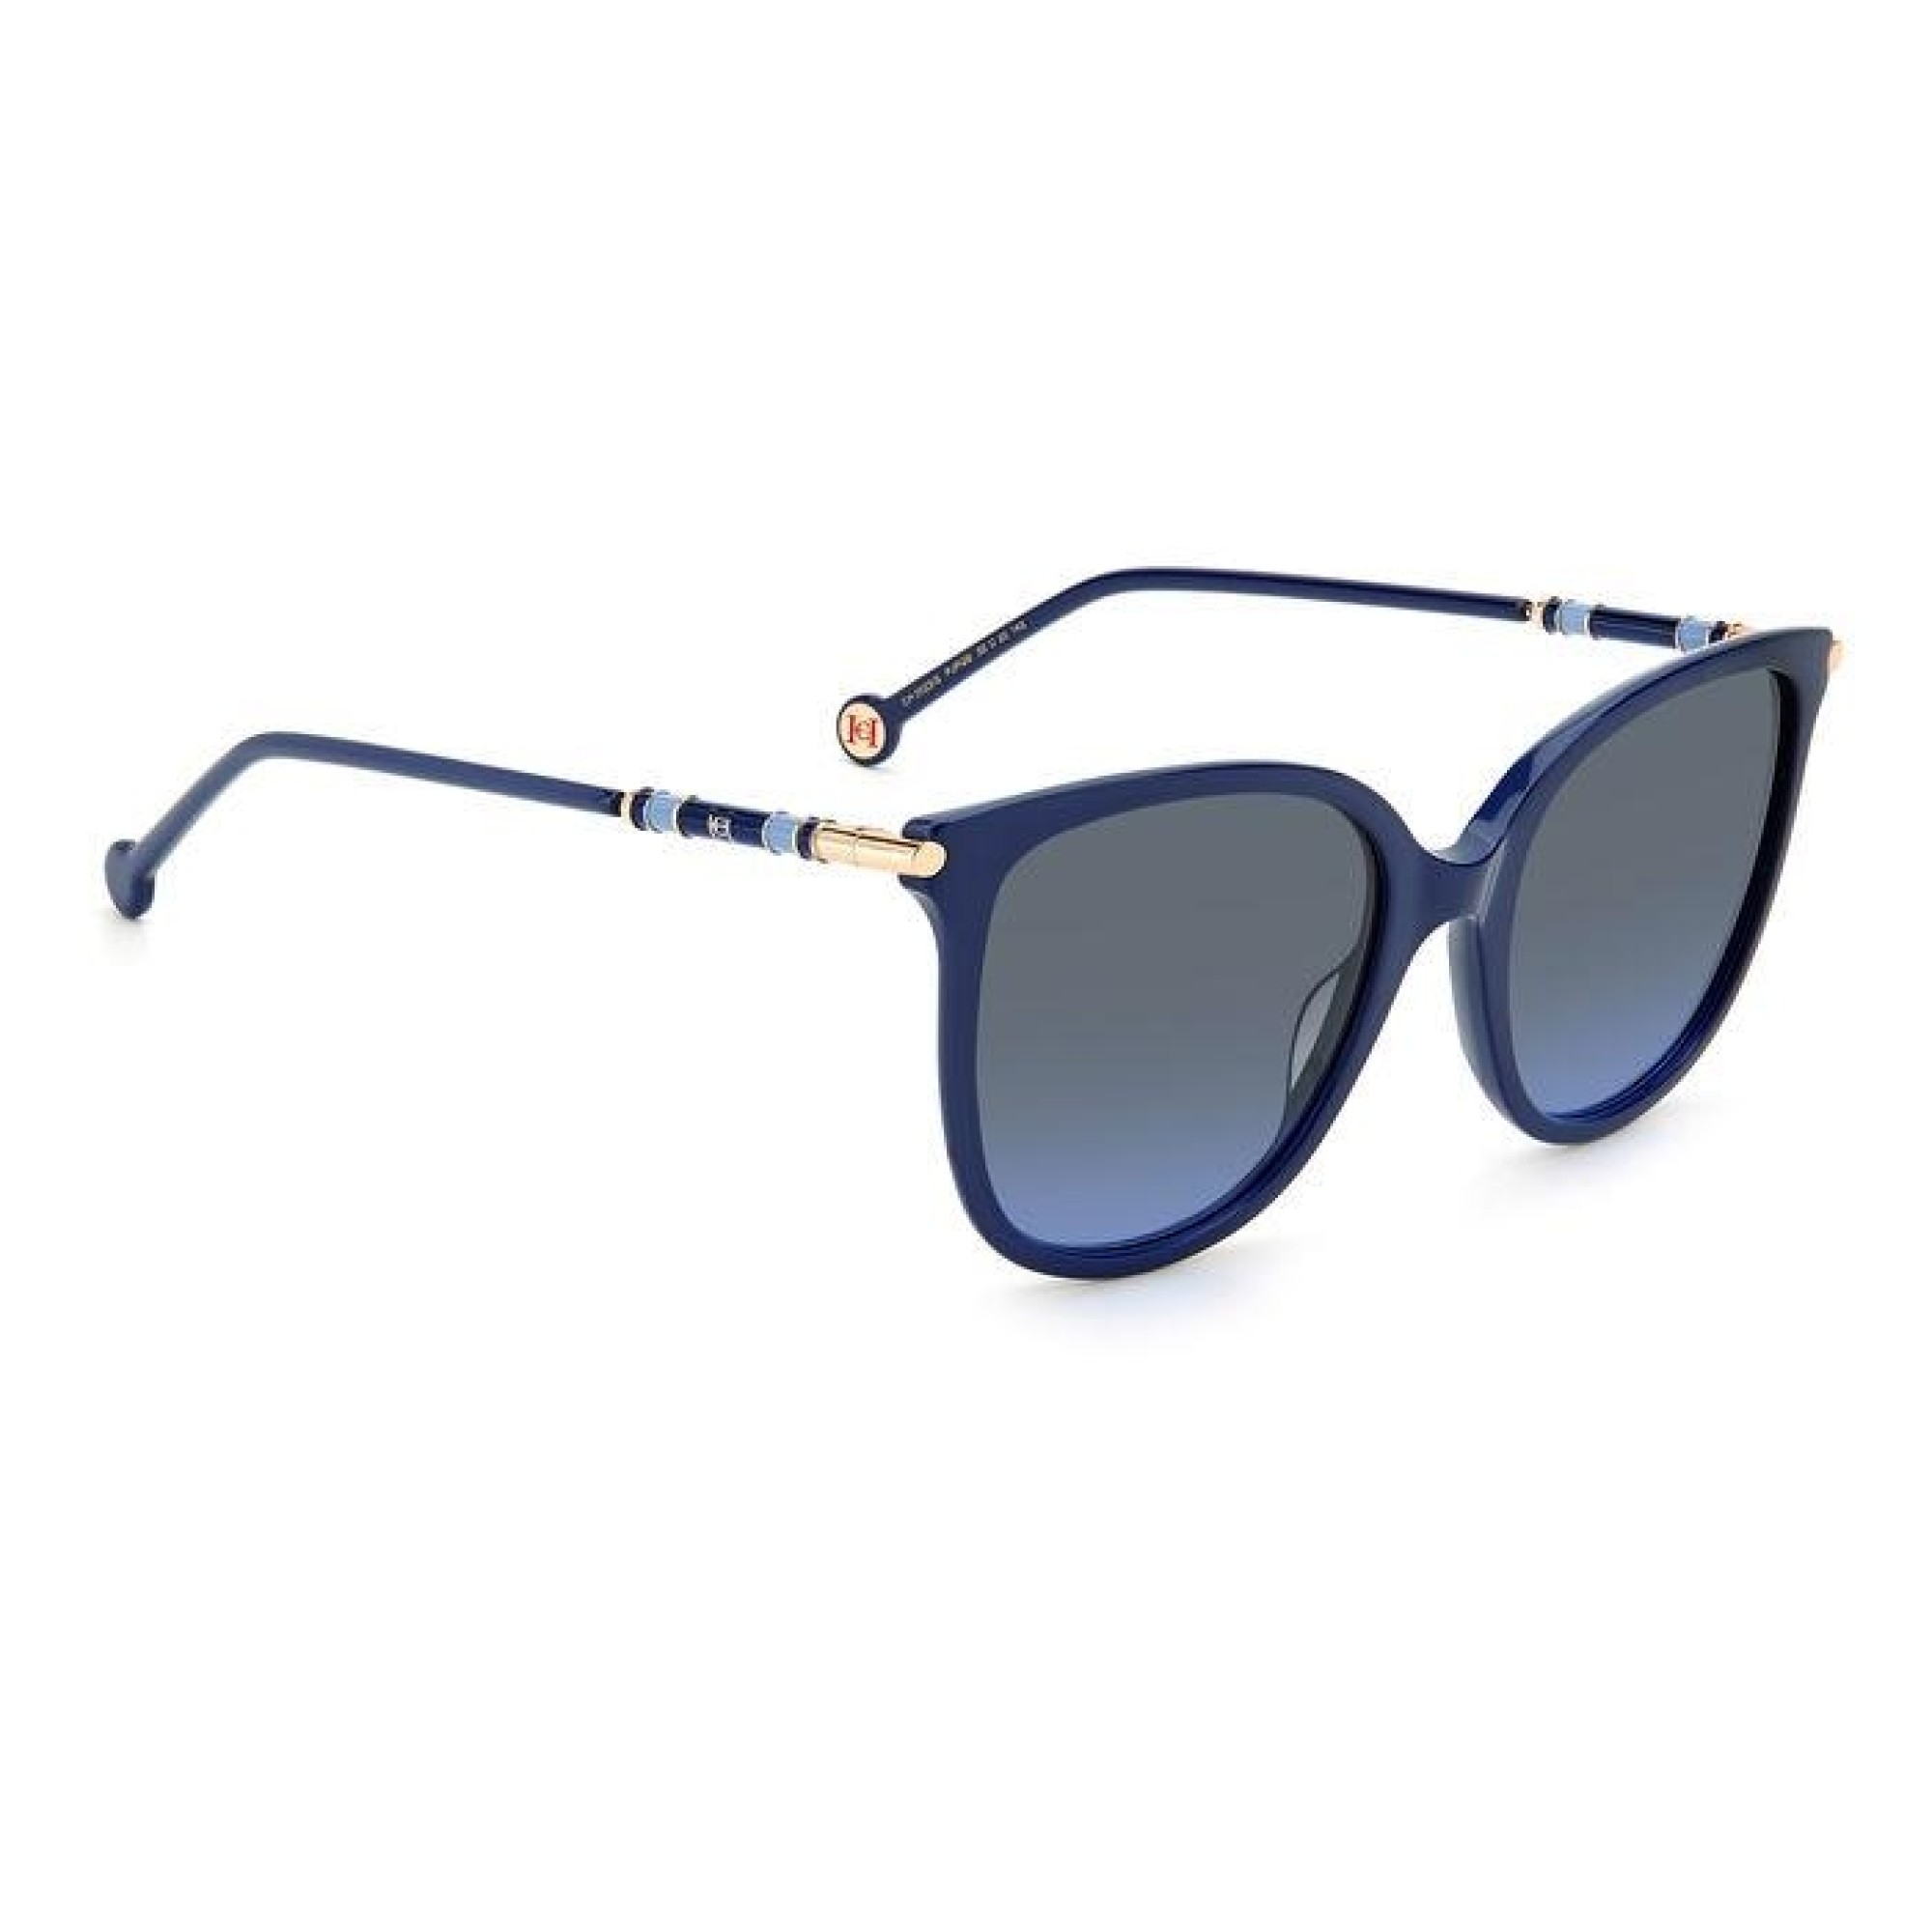 Carolina Herrera Ch 0023 S Pjp Gb Blue Sunglasses Woman